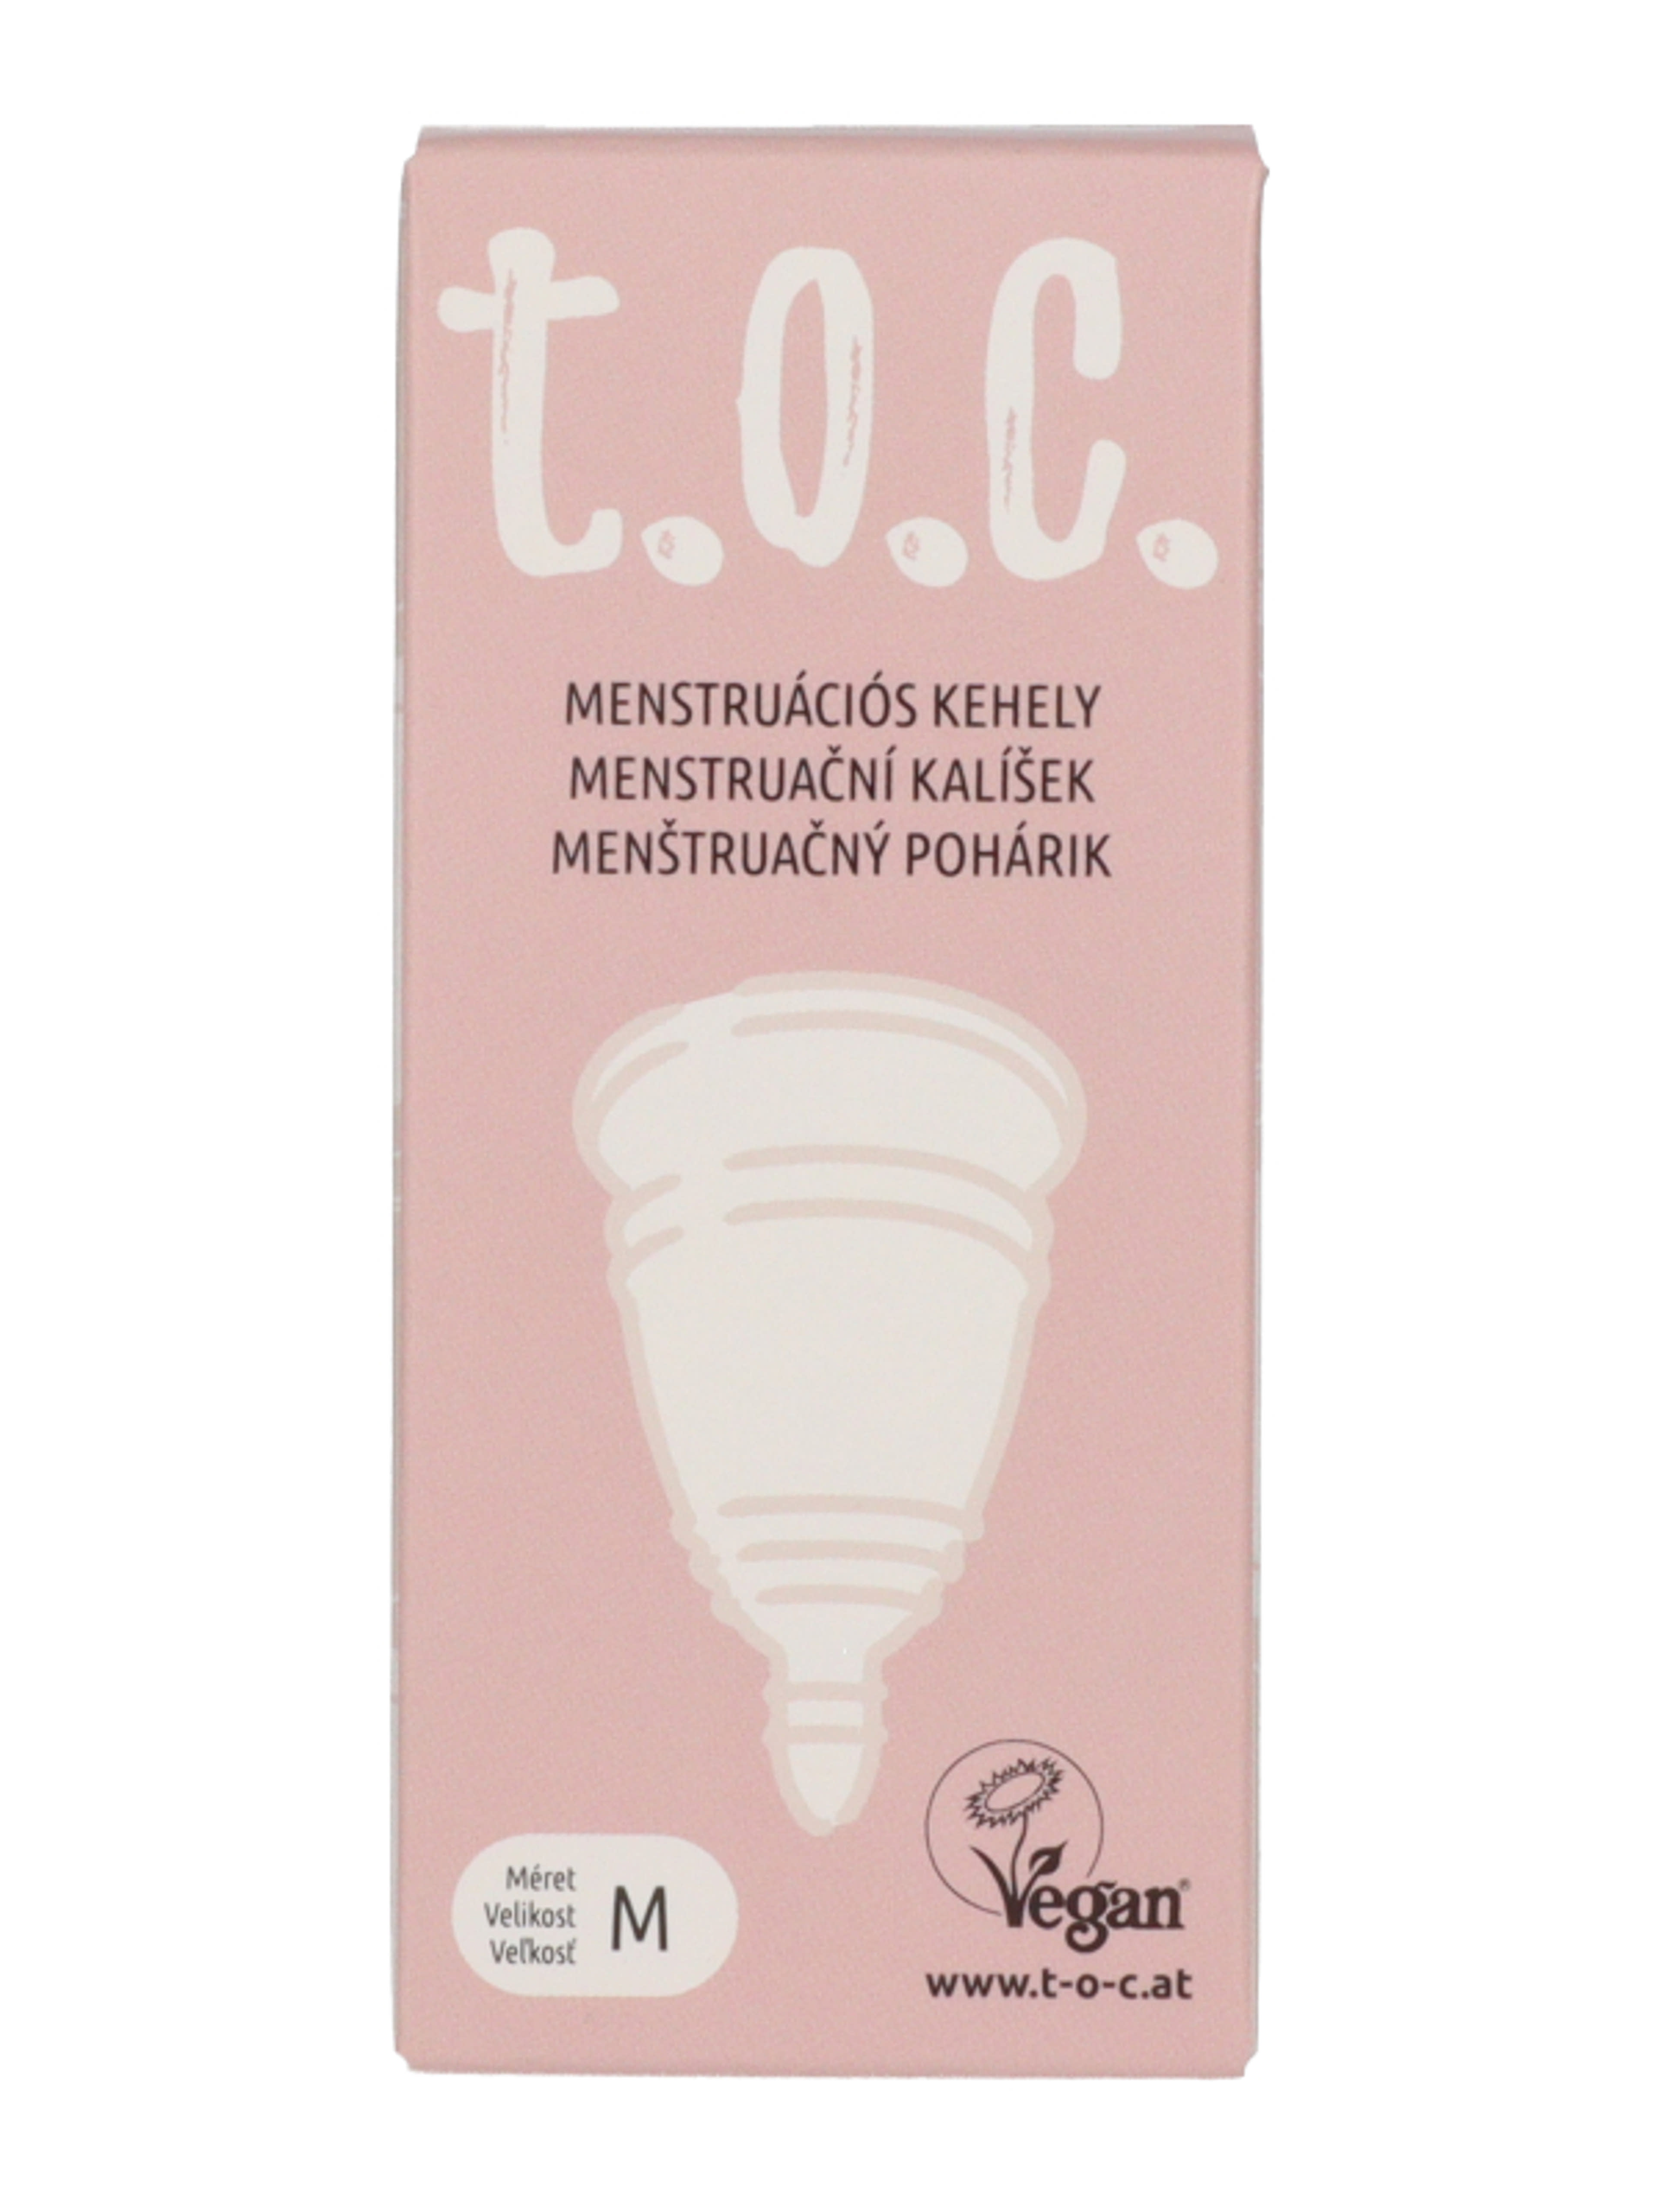 T.o.c menstruációs kehely M-es méret - 1 db-2